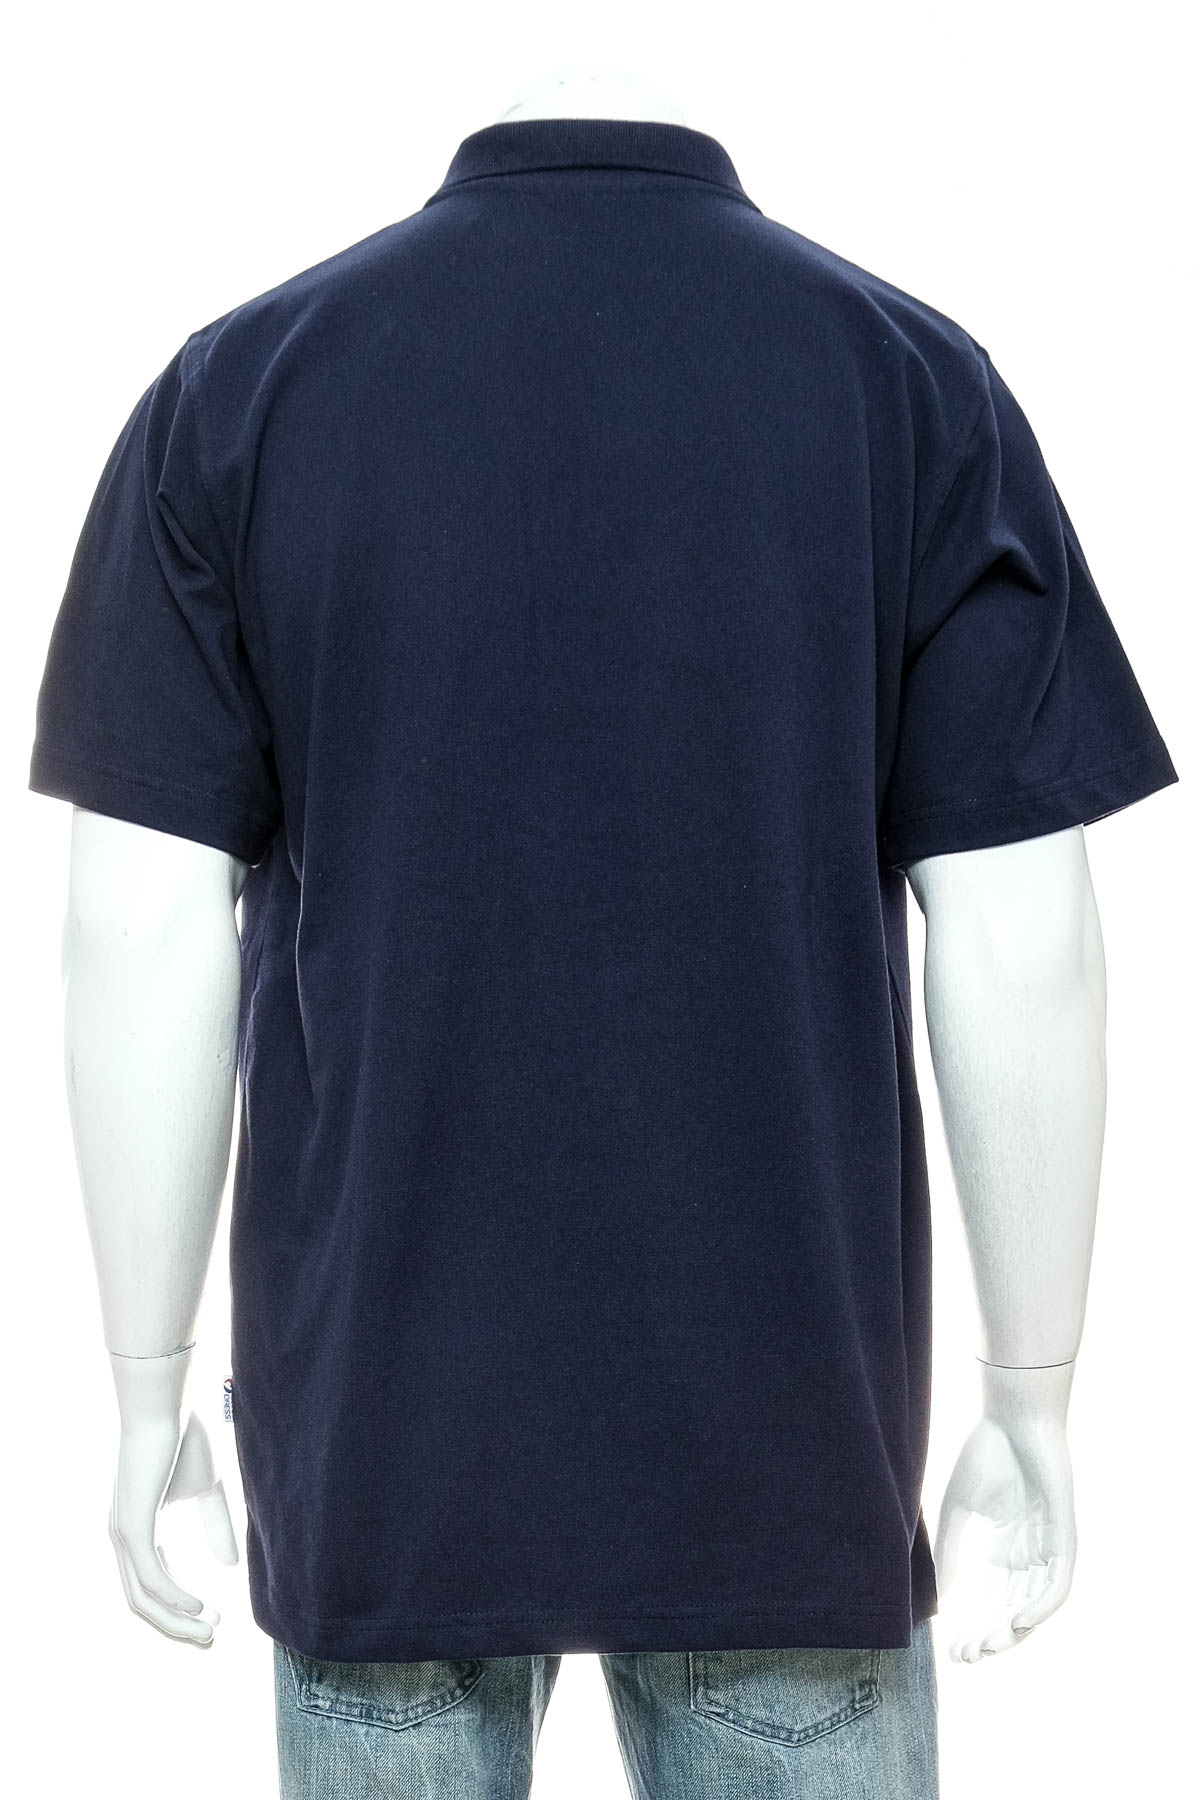 Men's T-shirt - Clinic Dress - 1